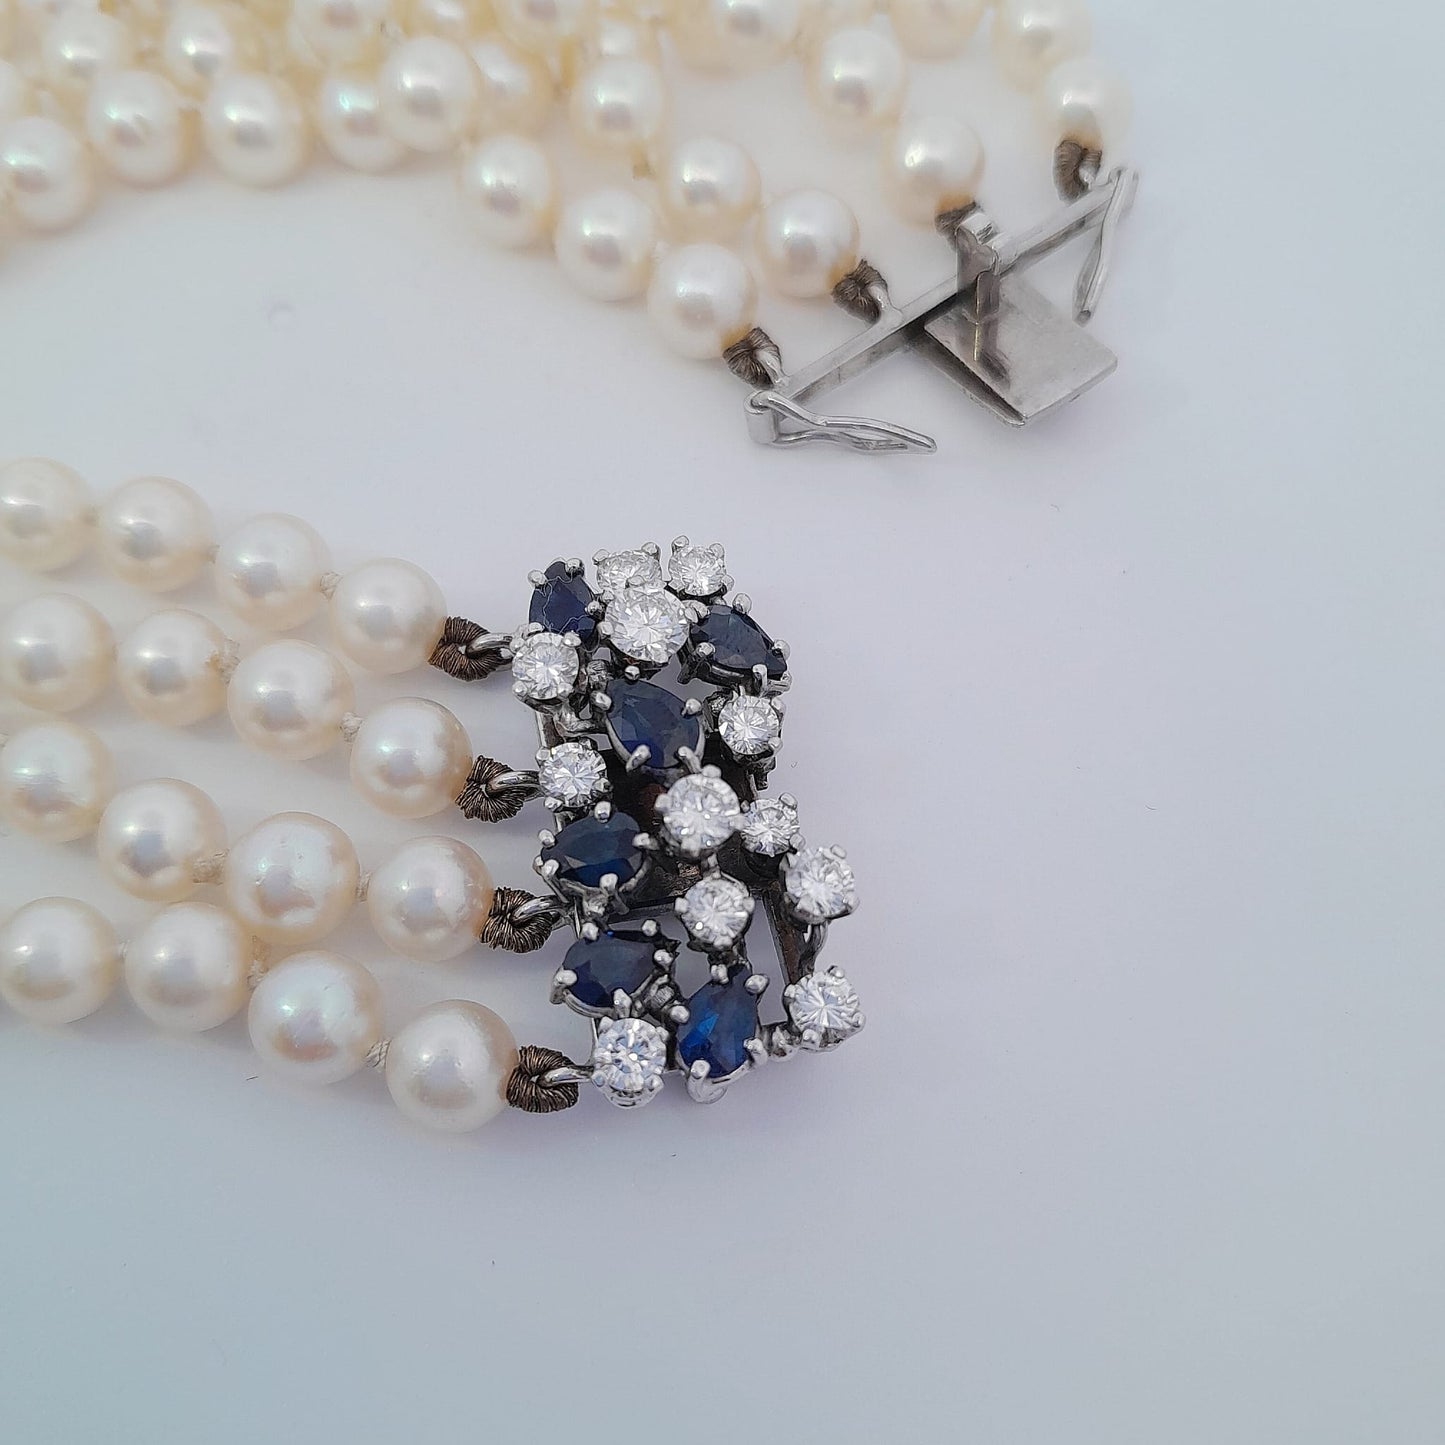 Bracciale multifili con perle, zaffiri e brillanti